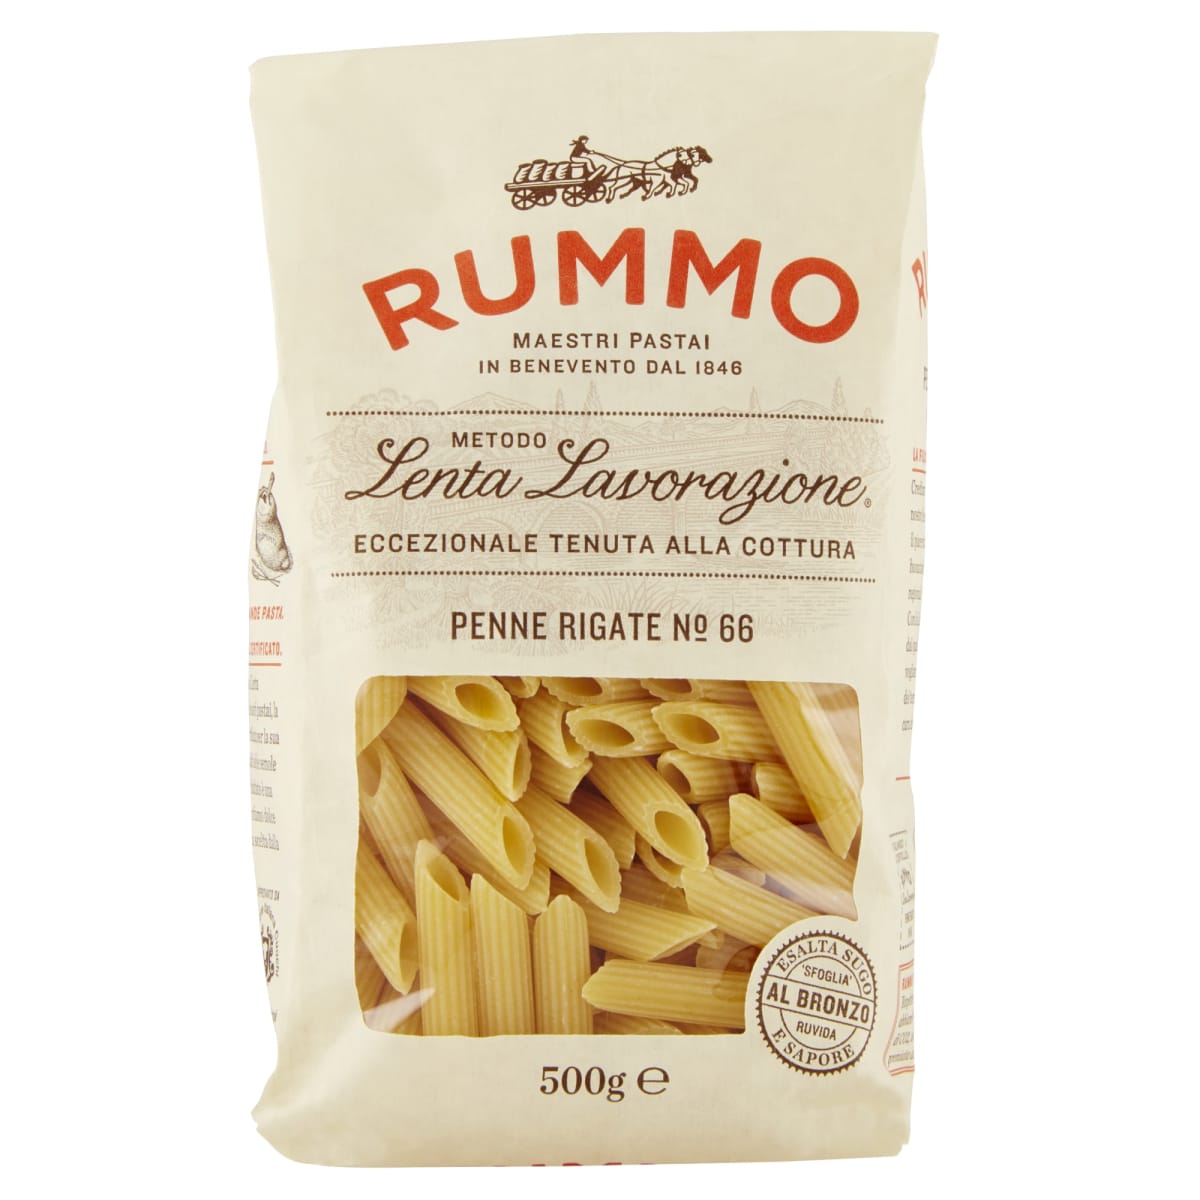 Rummo Penne Rigate No:66 500 g pasta  verkkokauppa